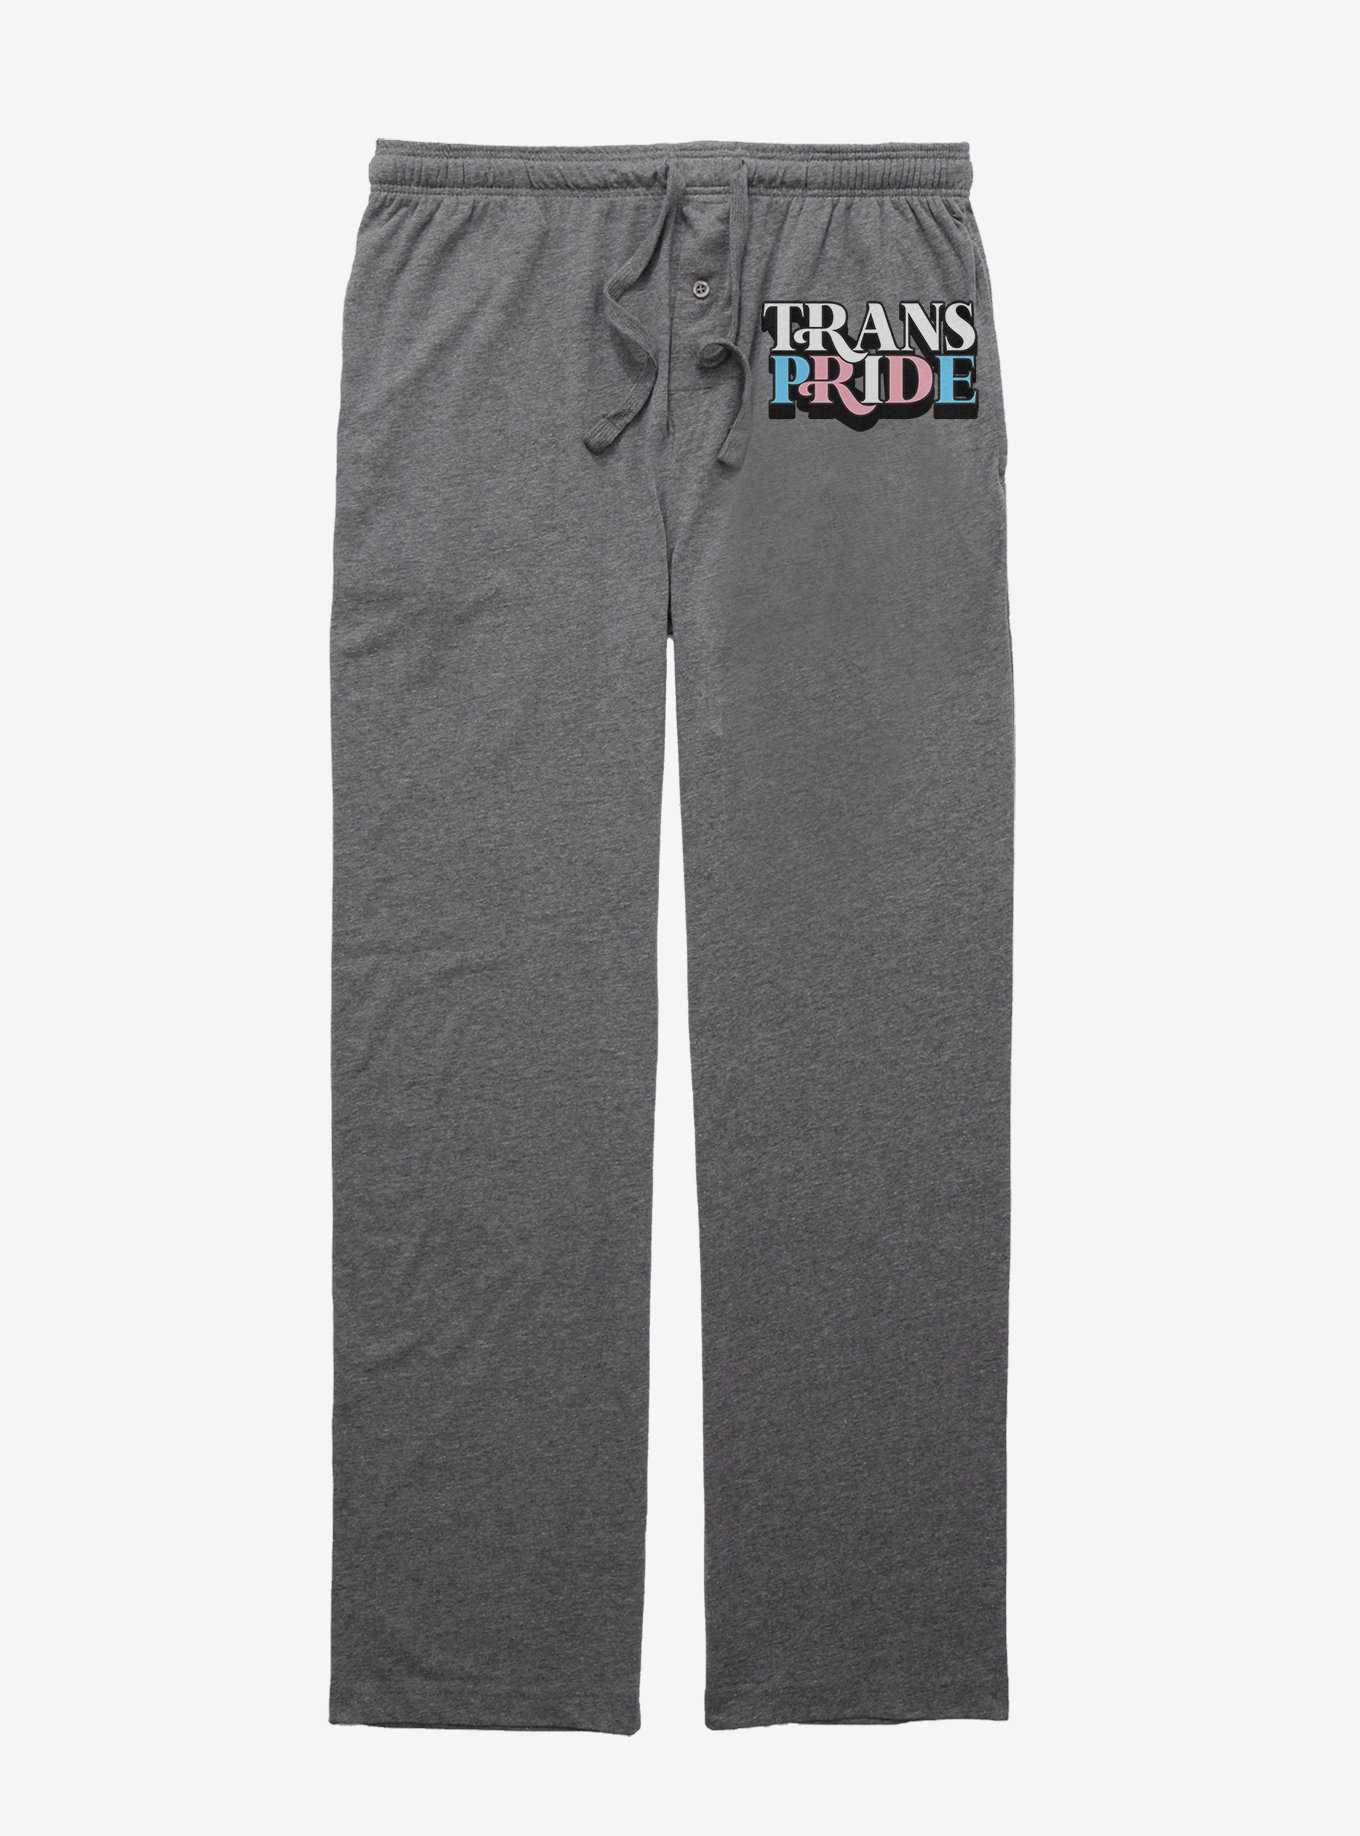 Trans Pride Pajama Pants, , hi-res